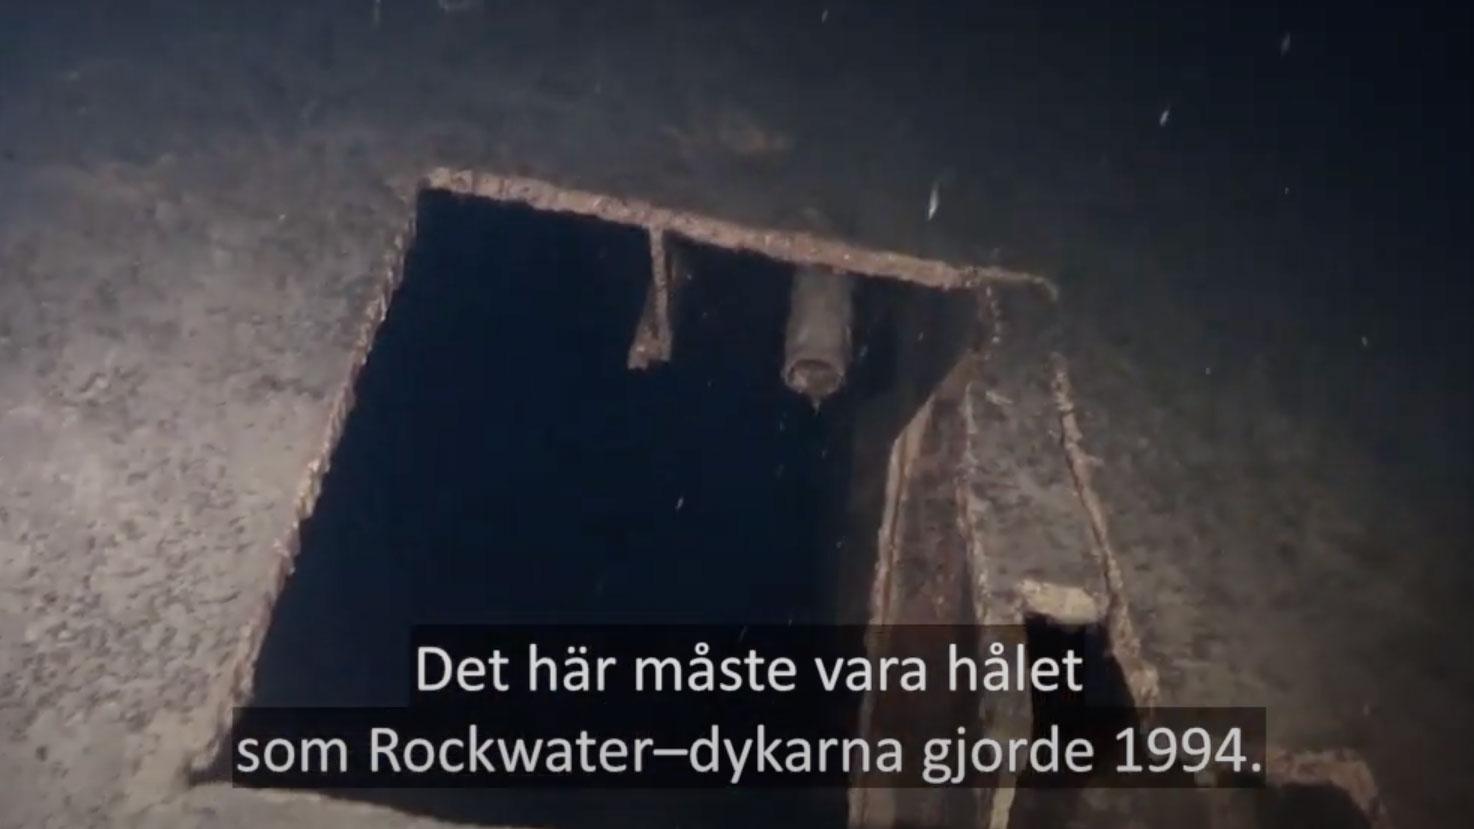 Efter förlisningen undersöktes Estonias vrak av dykare från företaget Rockwater, på uppdrag av Sjöfartsverket.